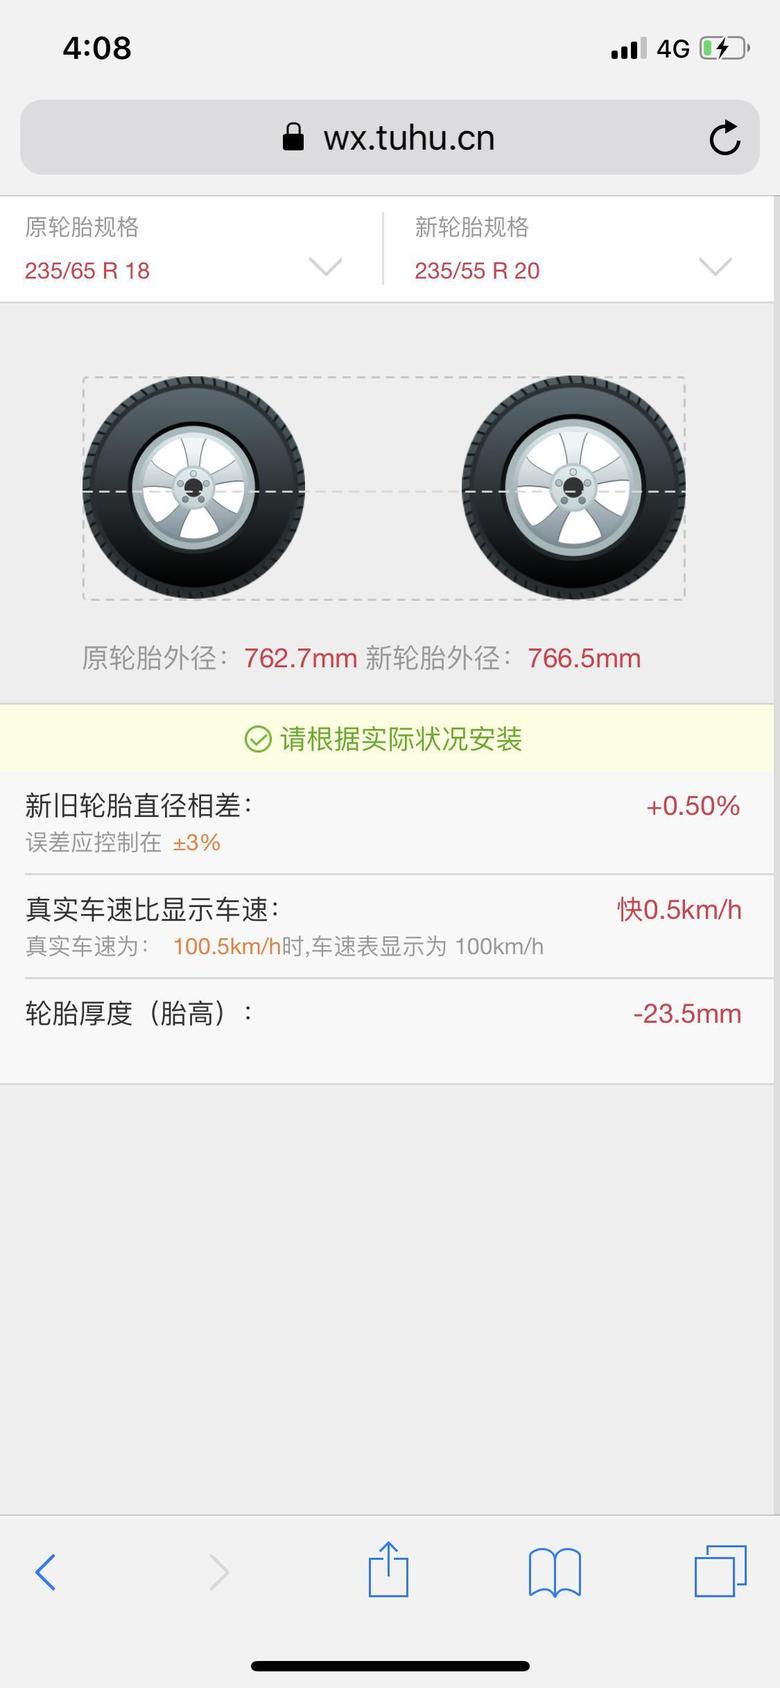 凯迪拉克xt6 不改变轮胎外径的前提下，是否可以换更大尺寸轮毂和扁胎？有懂行的吗？如下图，直径误差只有0.05%是否可以改？需要备案吗？